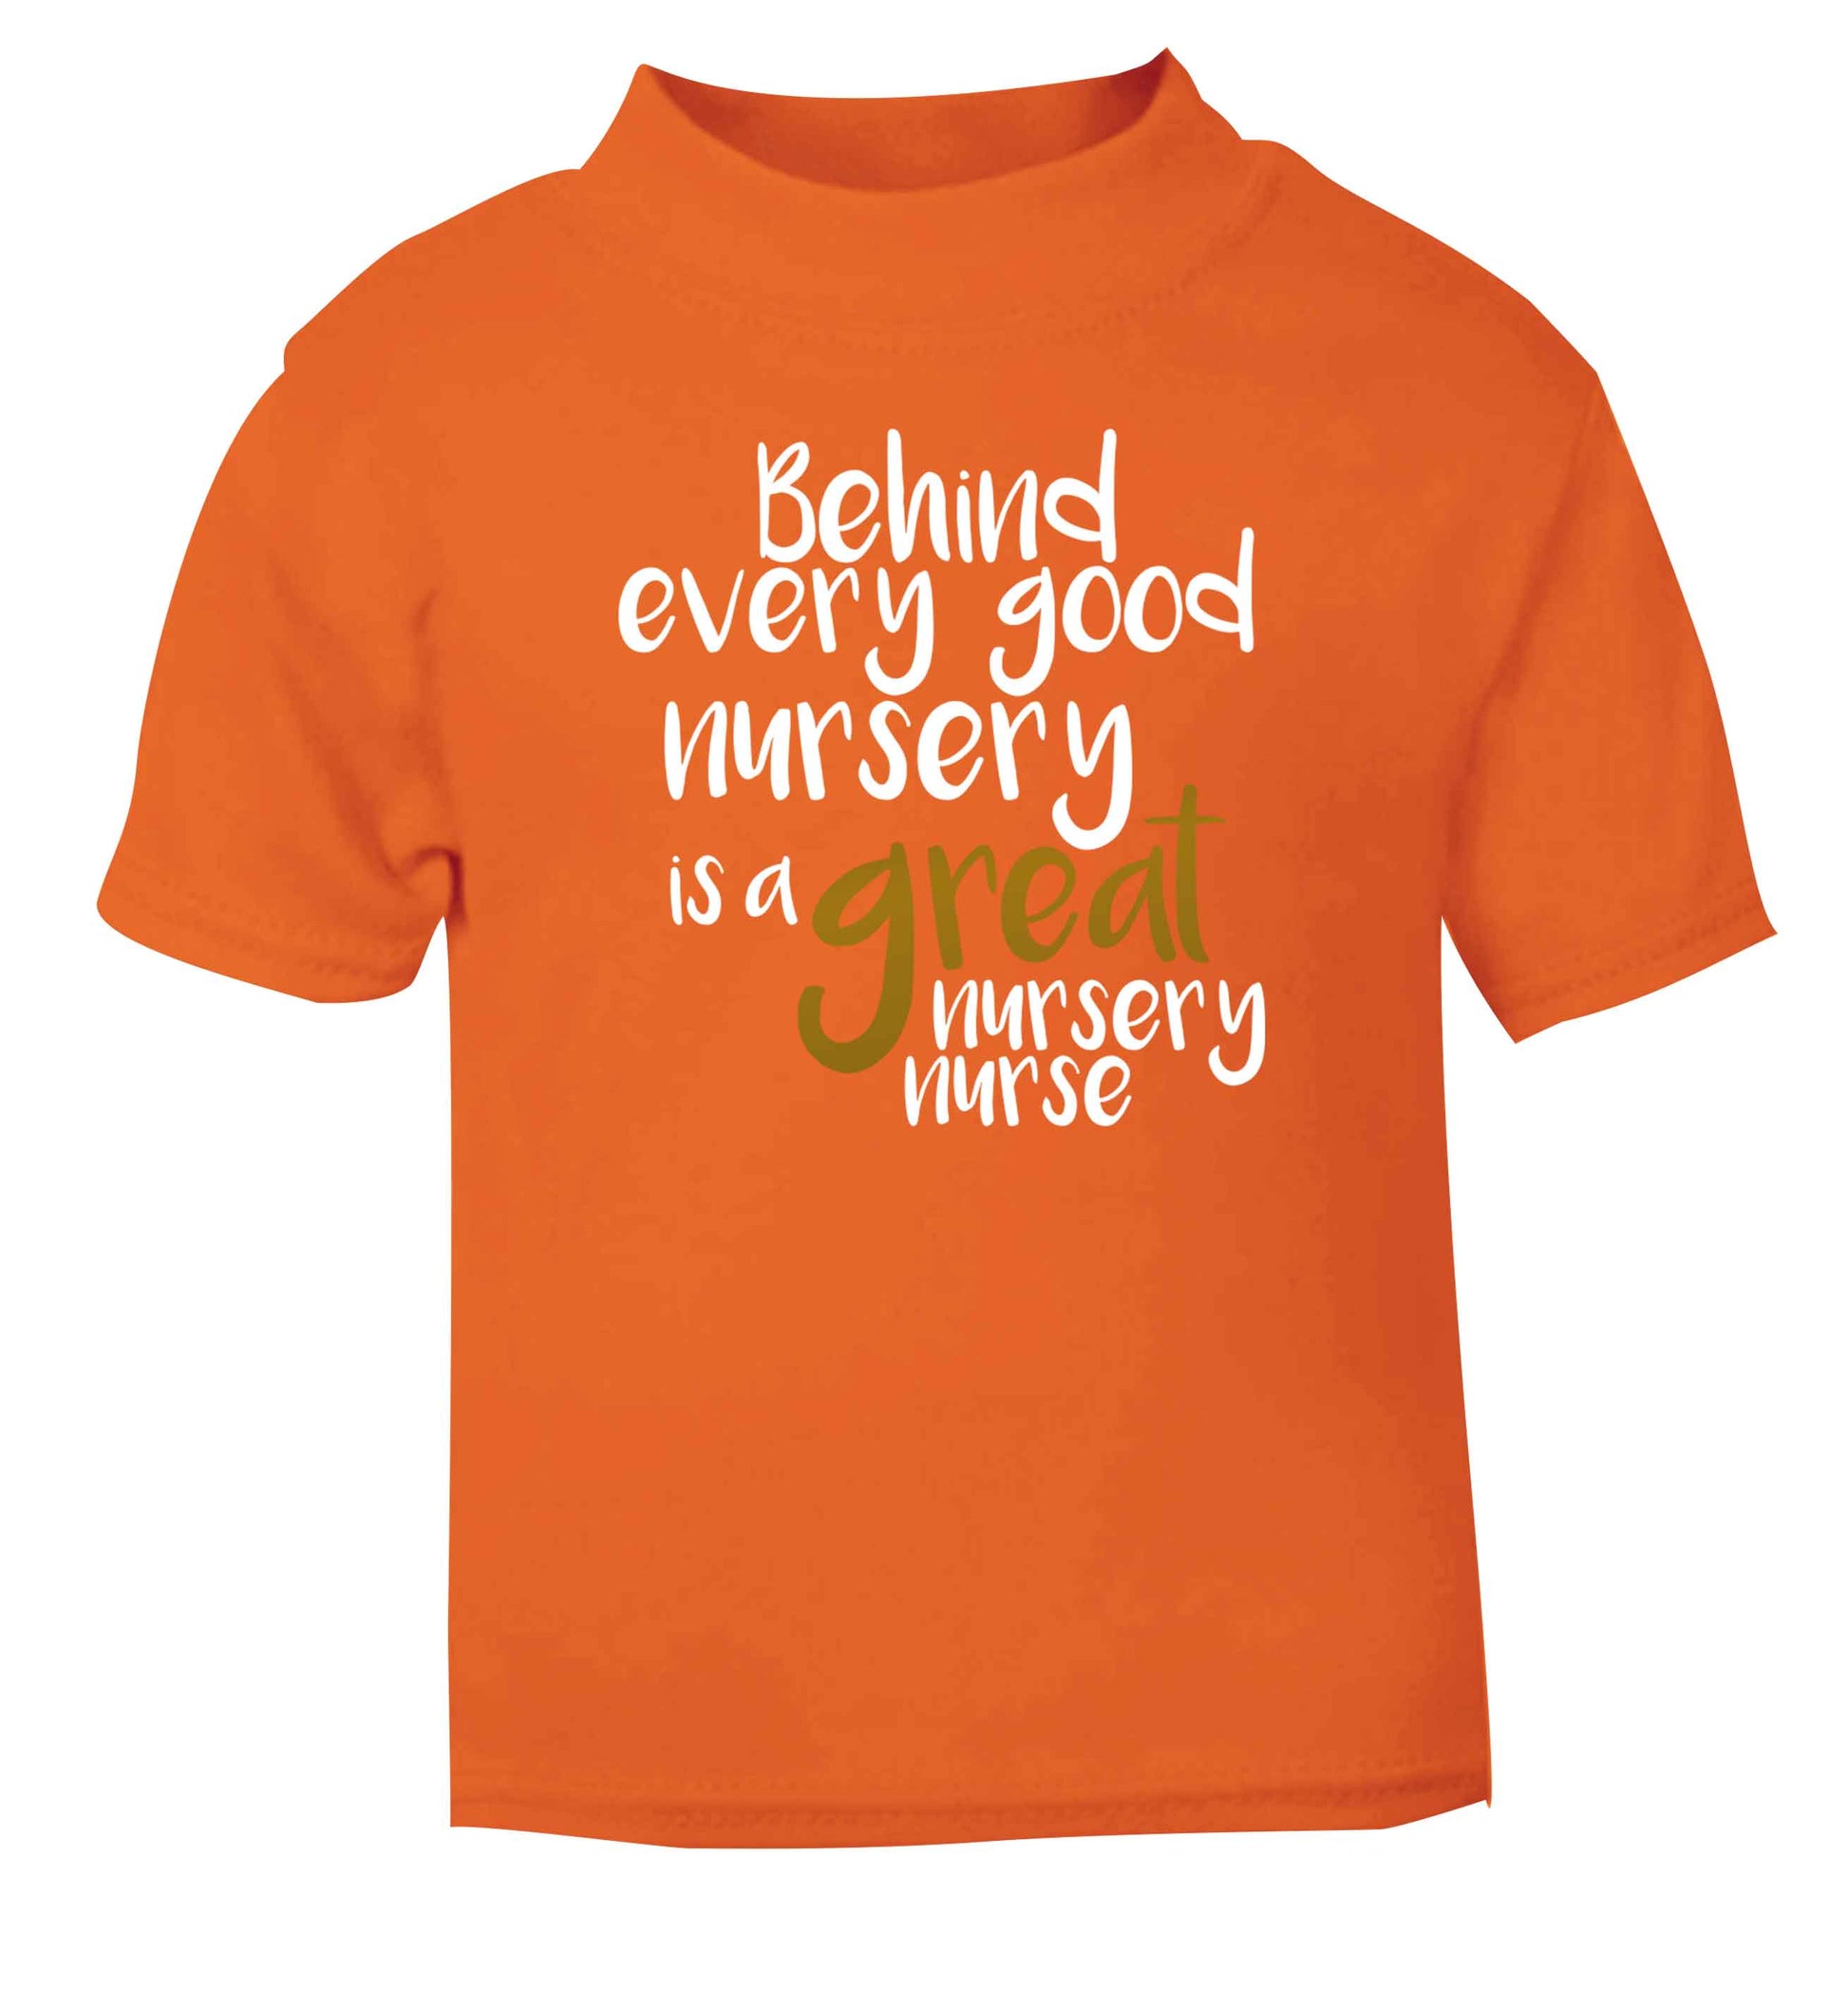 Behind every good nursery is a great nursery nurse orange Baby Toddler Tshirt 2 Years